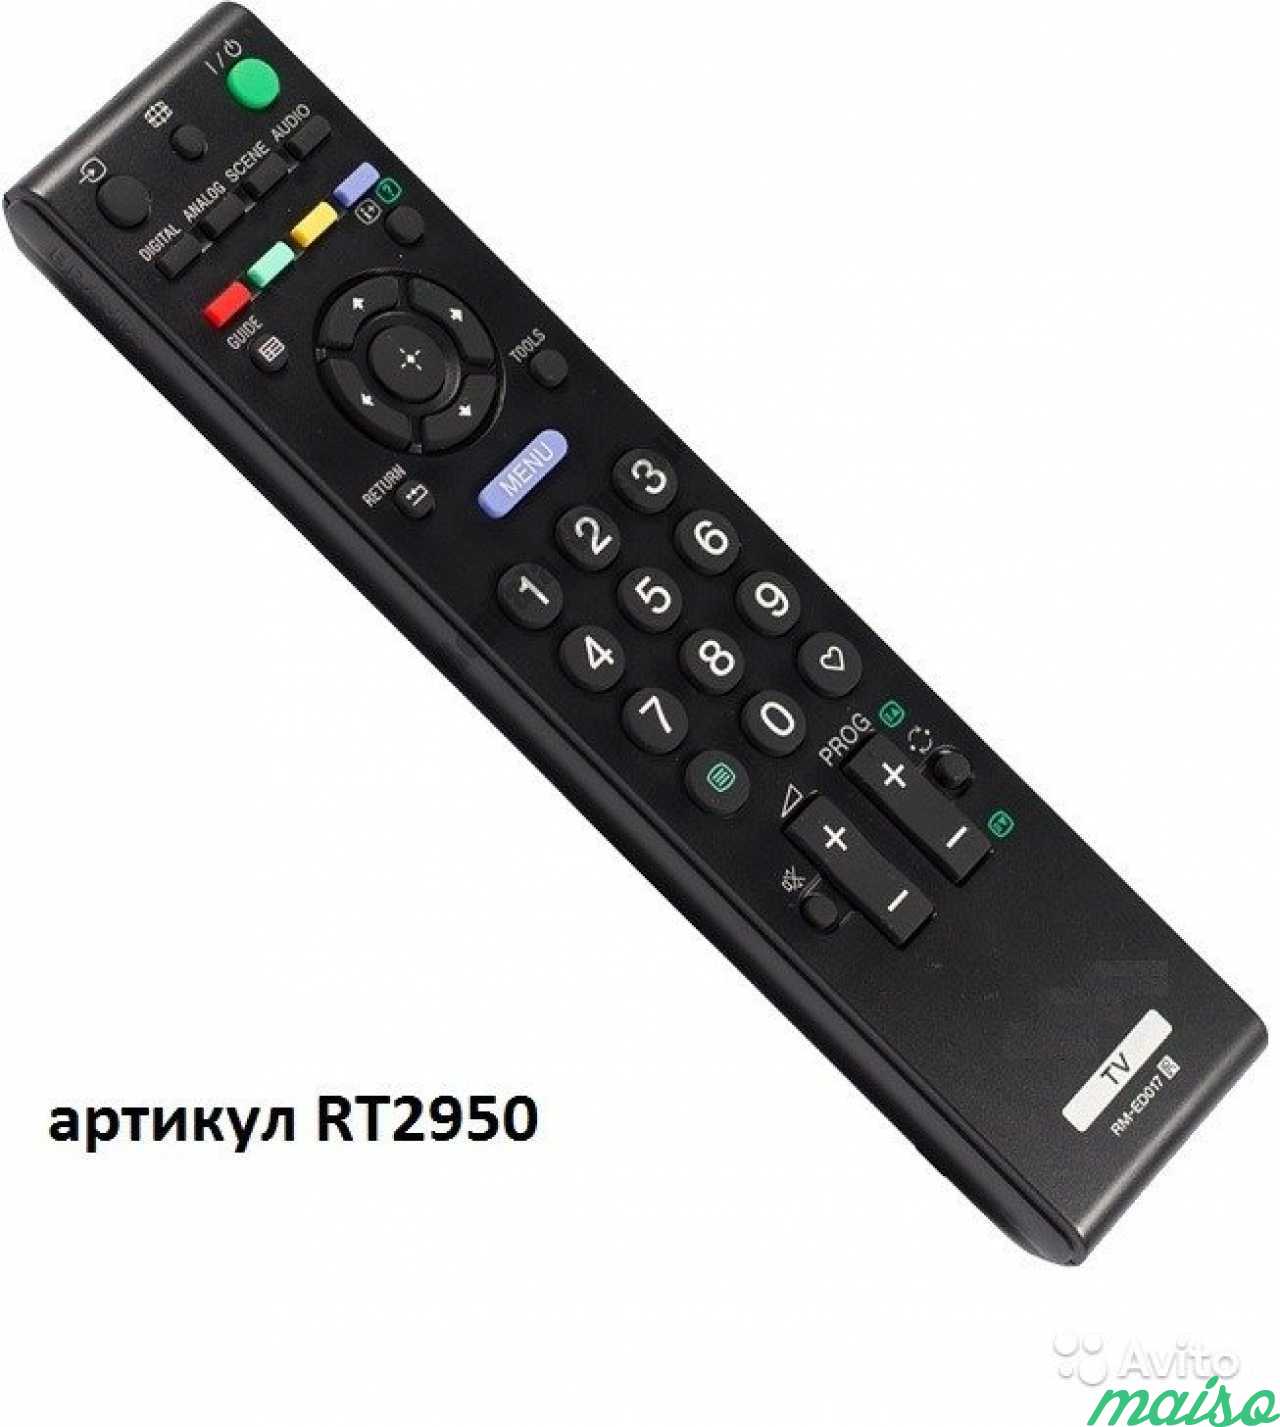 Телевизор сони rm. Sony RM-ed014. Пульт для Sony RM-ed017. Пульт для Sony RM-ed014. Sony RM-ed058.